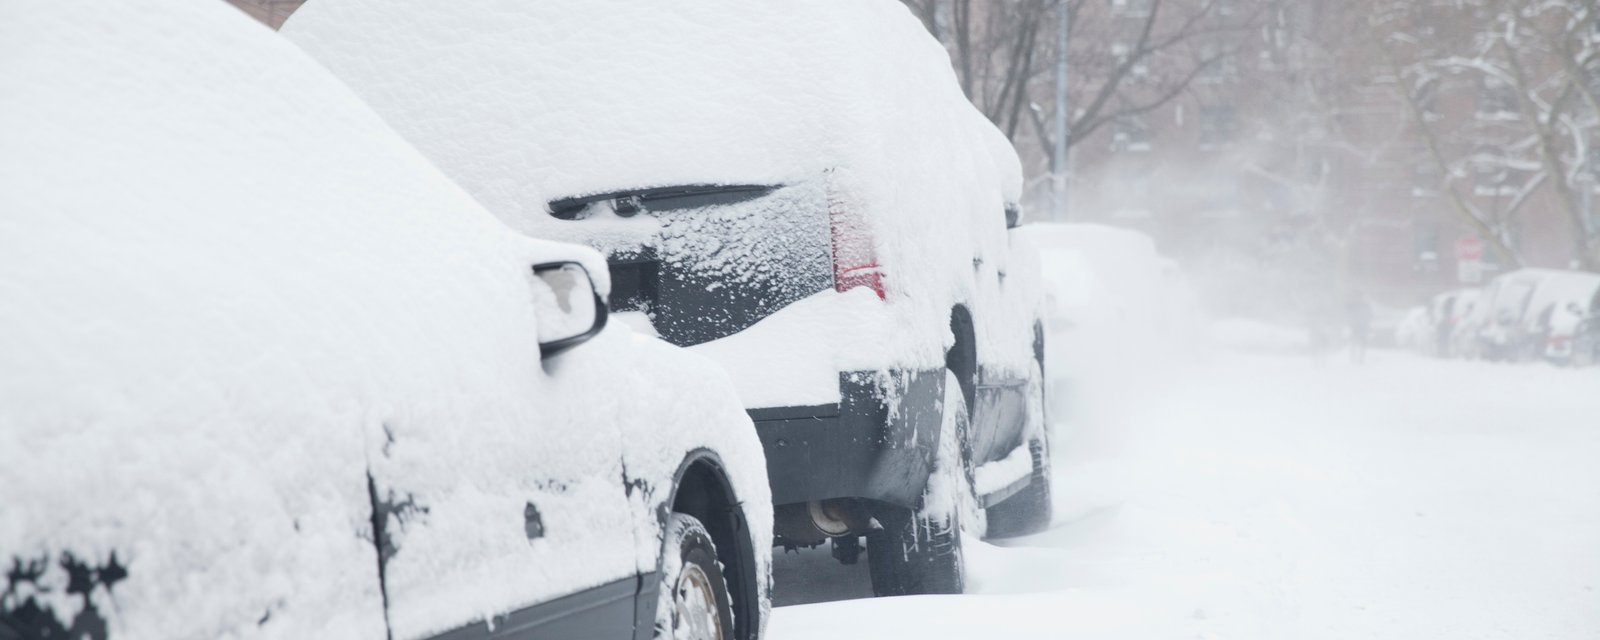 MétéoMédia nous prédit un hiver très long, glacial et marqué par de nombreuses tempêtes de neige et de verglas